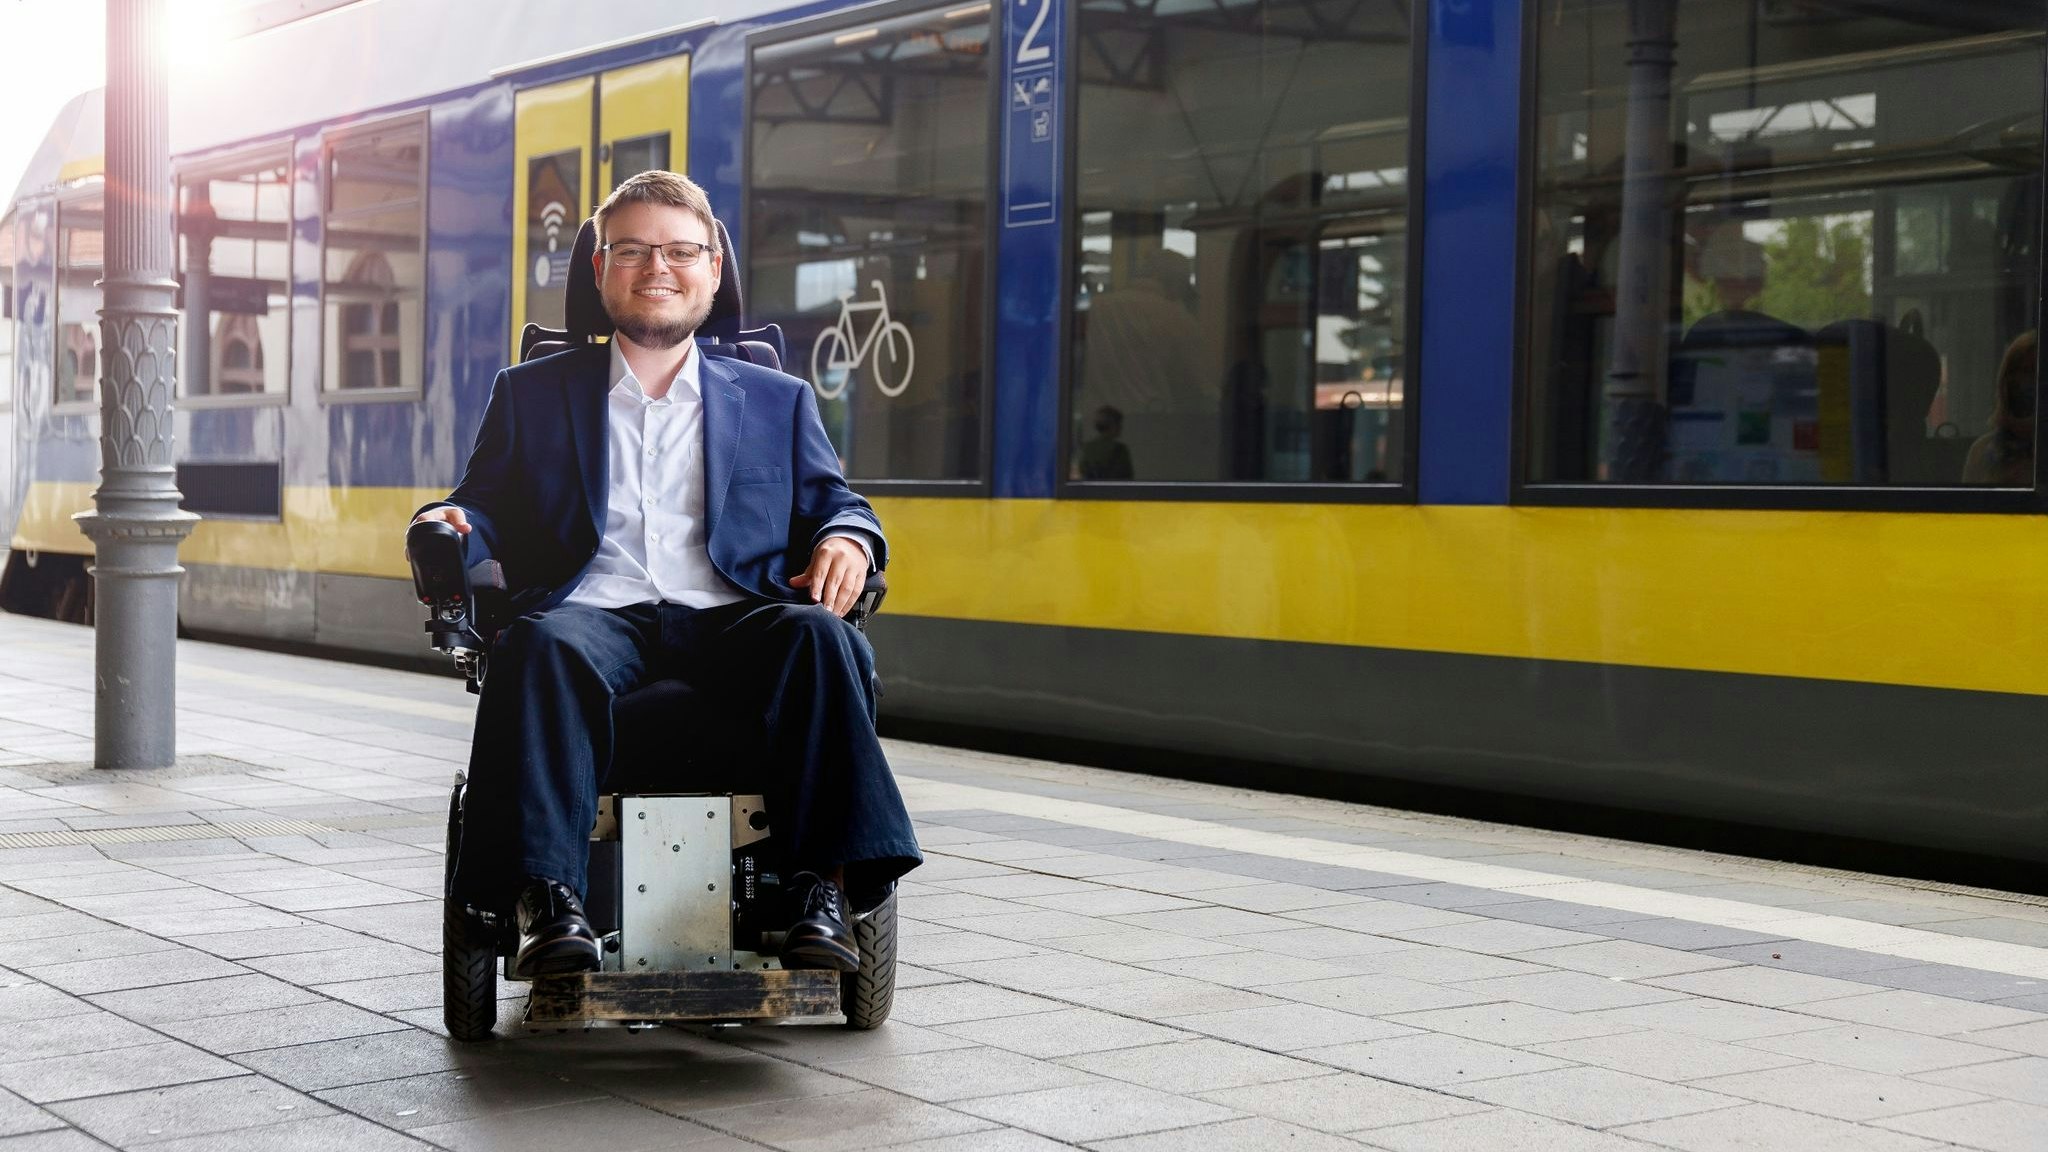 Der niedersächsische Landtagsabgeordnete Constantin Grosch (SPD) sitzt an einem Bahnsteig in seinem Rollstuhl. Foto: dpa/Michalek